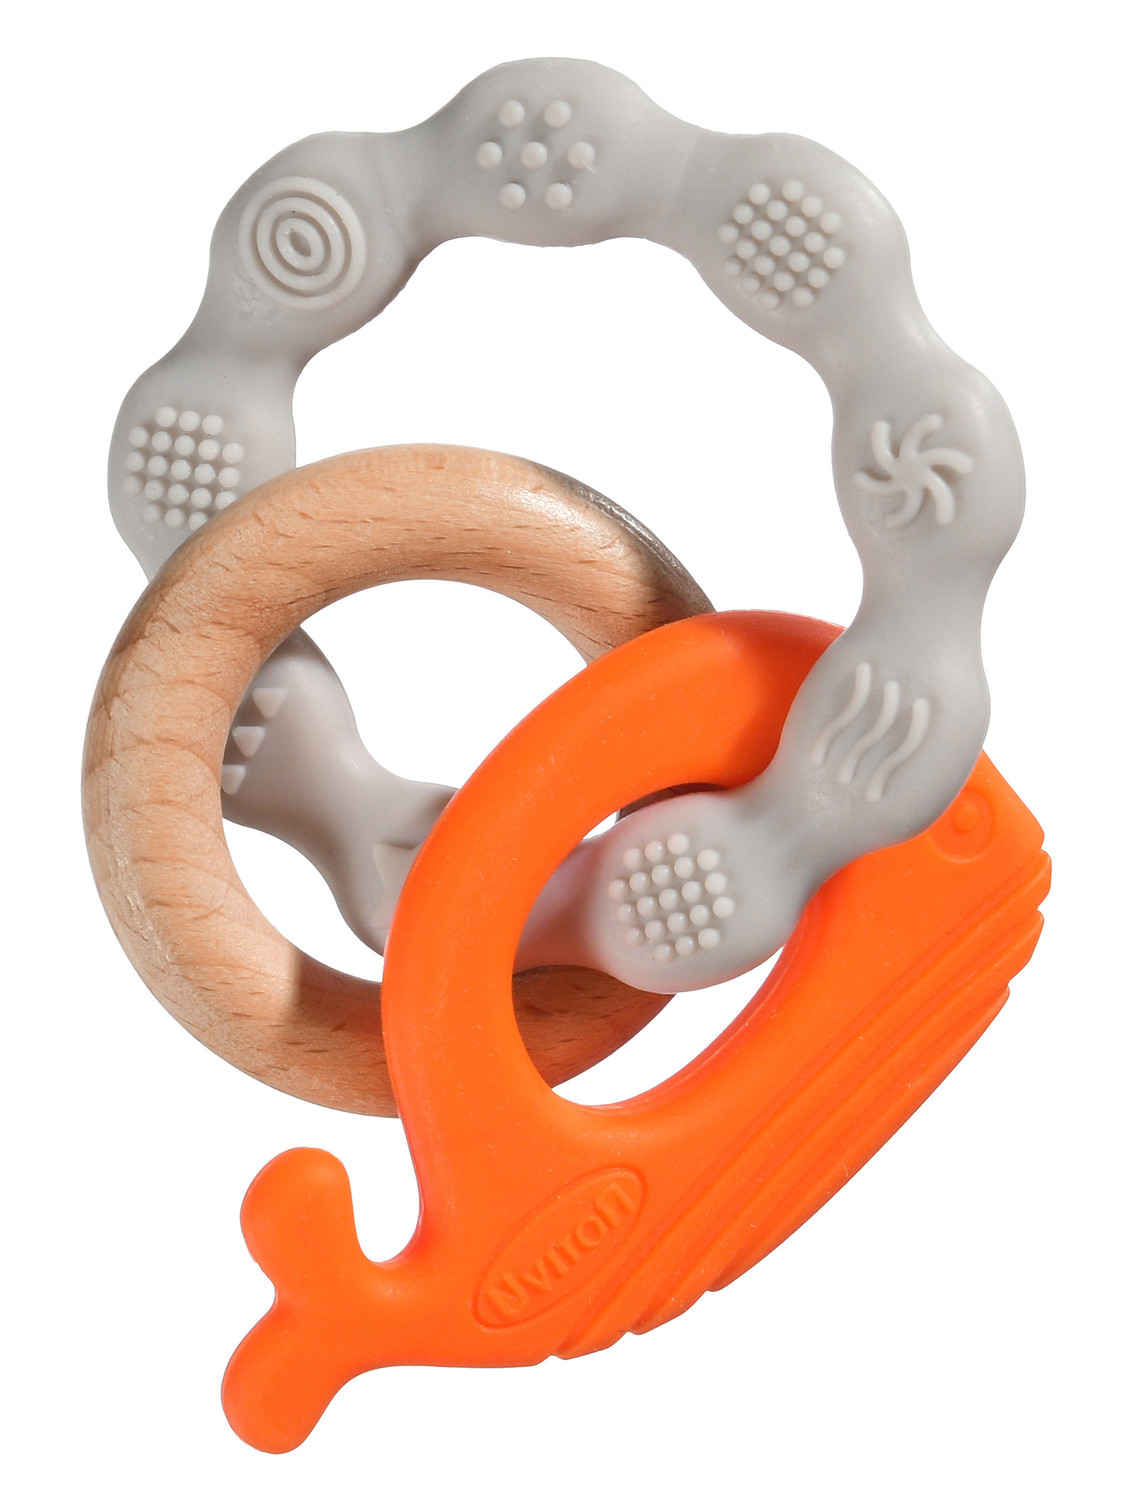 Силиконовая игрушка-прорезыватель с буком SEA (серый/оранжевый)